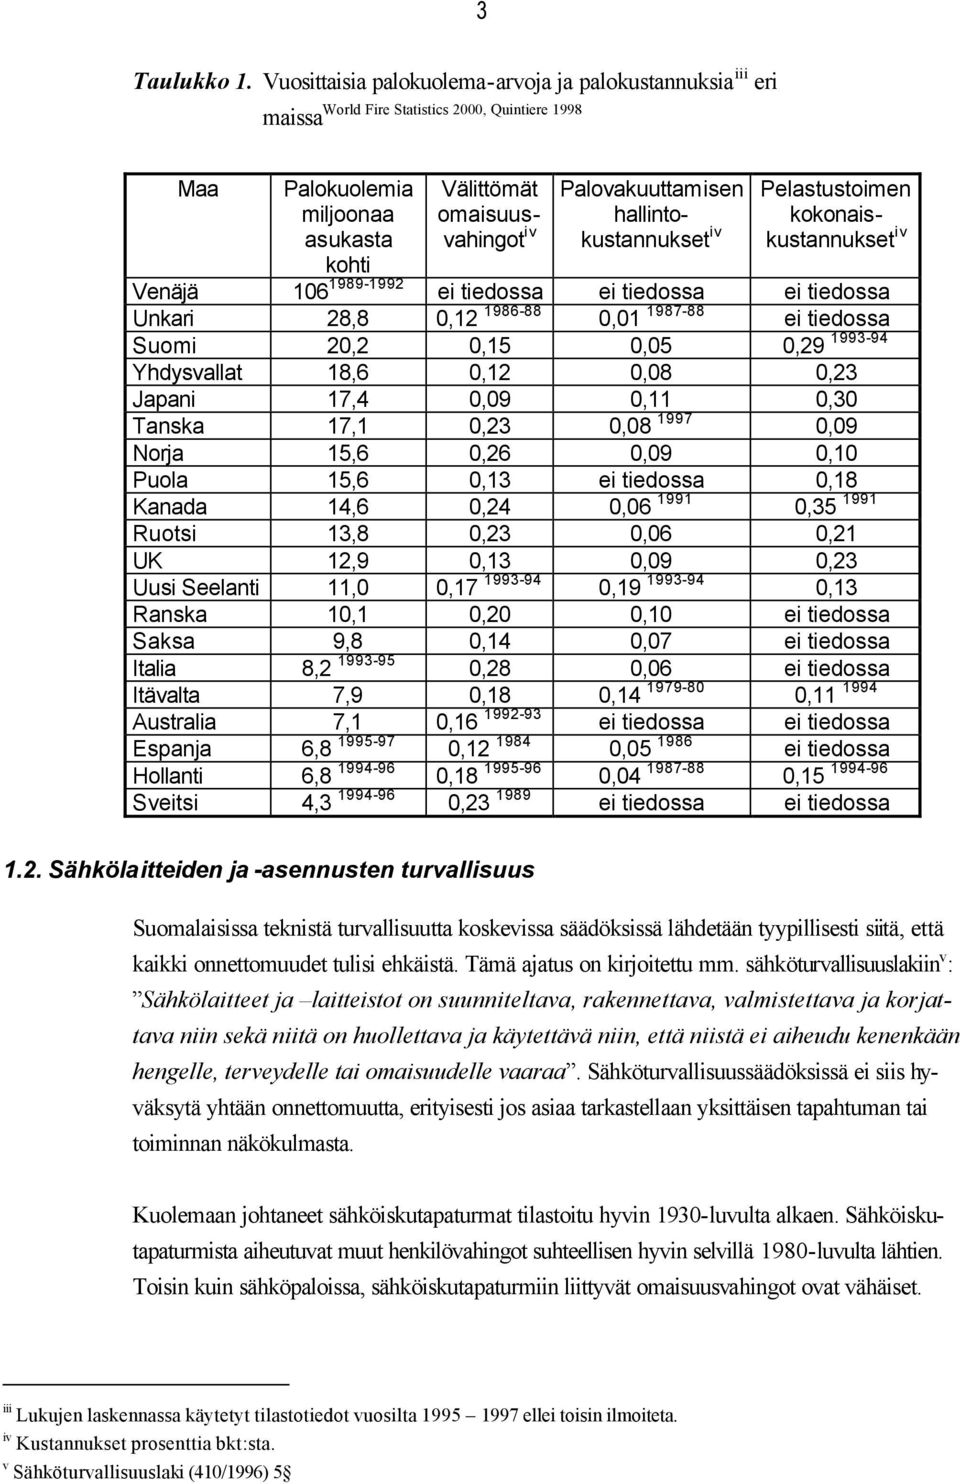 Palovakuuttamisen hallintokustannukset iv Pelastustoimen kokonaiskustannukset iv Venäjä 106 1989-1992 ei tiedossa ei tiedossa ei tiedossa Unkari 28,8 0,12 1986-88 0,01 1987-88 ei tiedossa Suomi 20,2